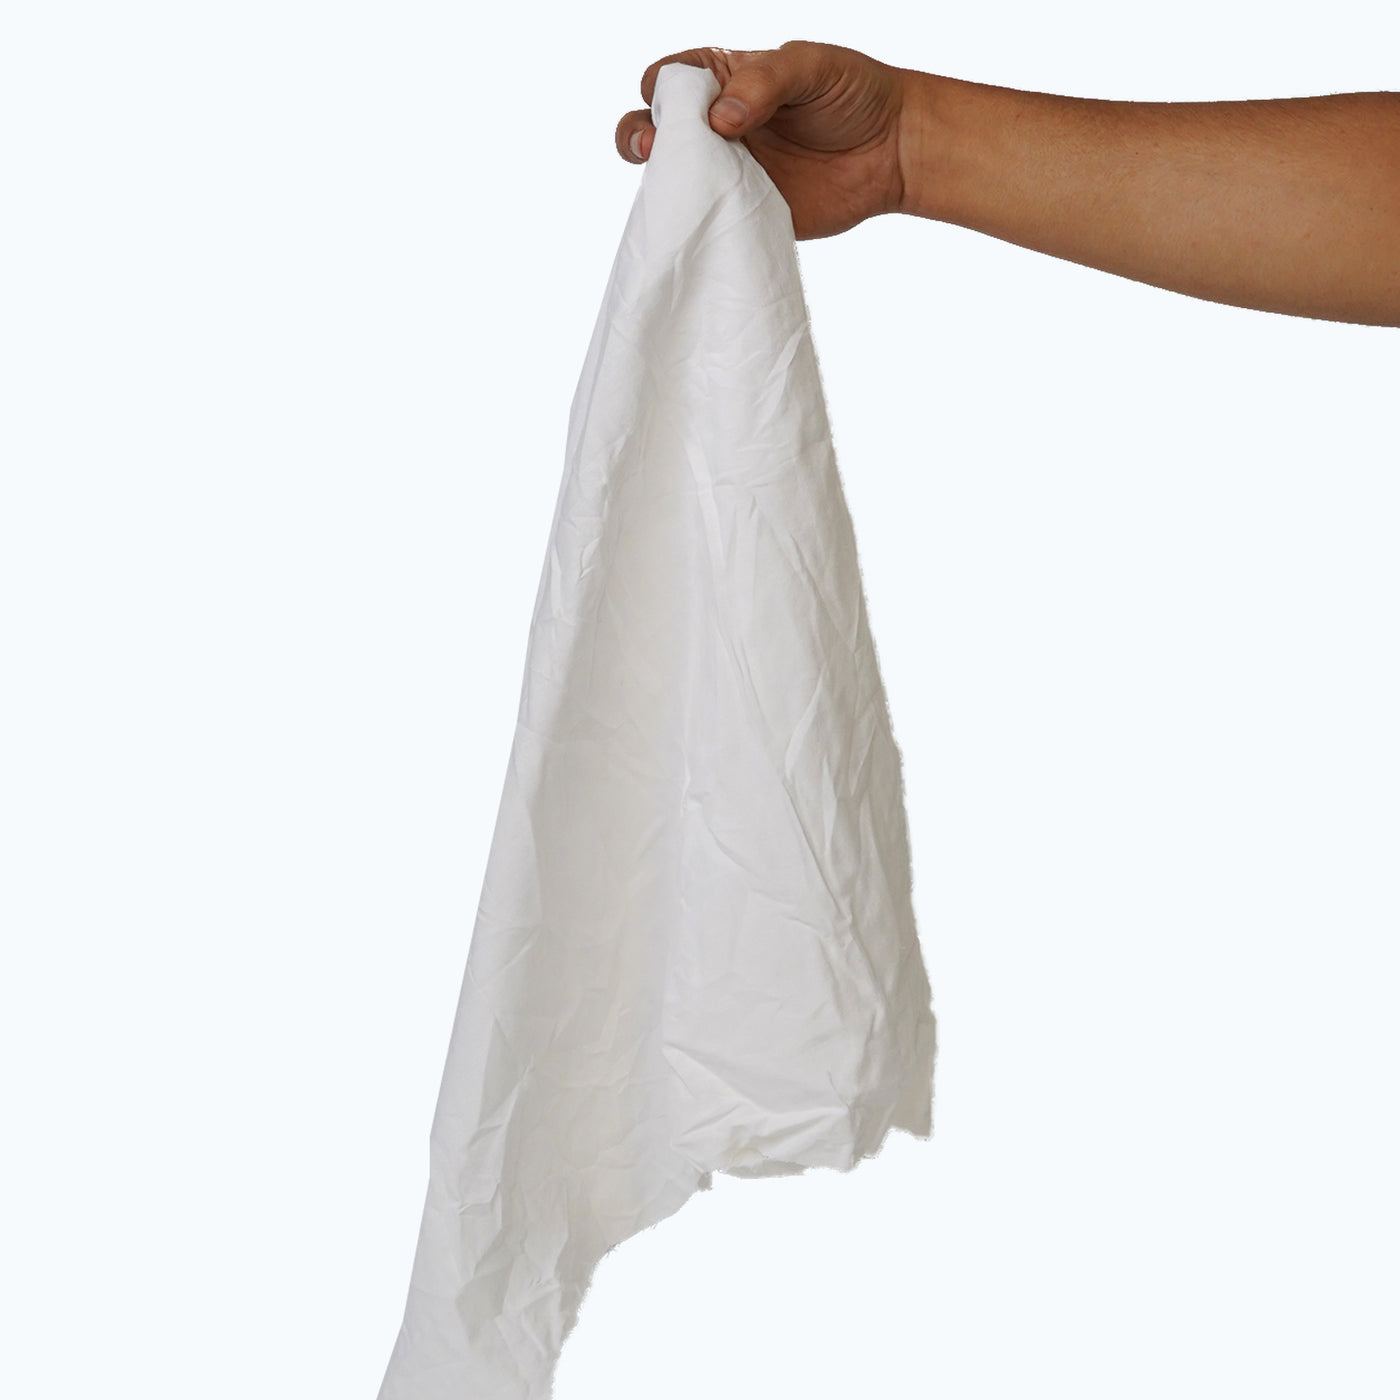 White Cotton Lint Free Rags, 25lb/Case